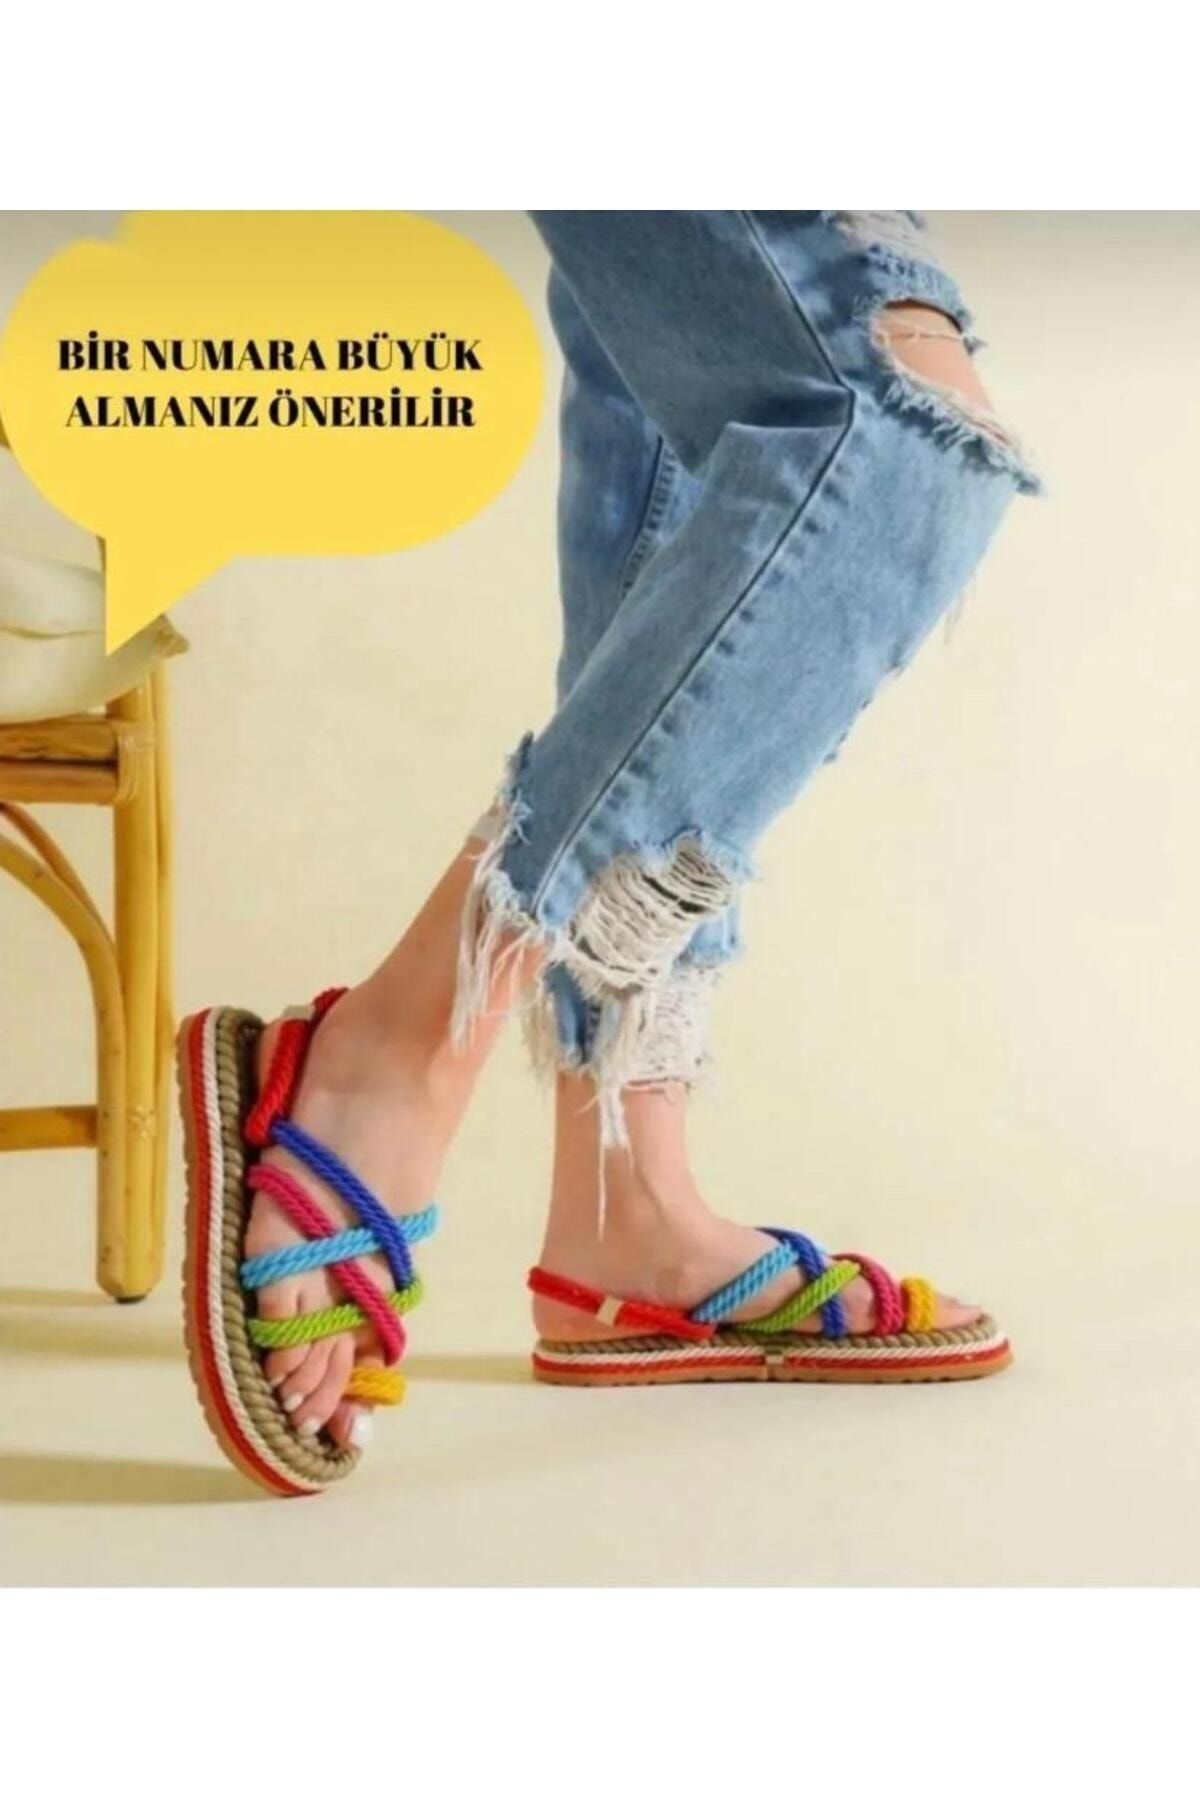 Pinkada Kadın Renkli Halat Ipli Yüksek Taban Hasır Sandalet - 1 Numara Büyük Almanız Önerilir